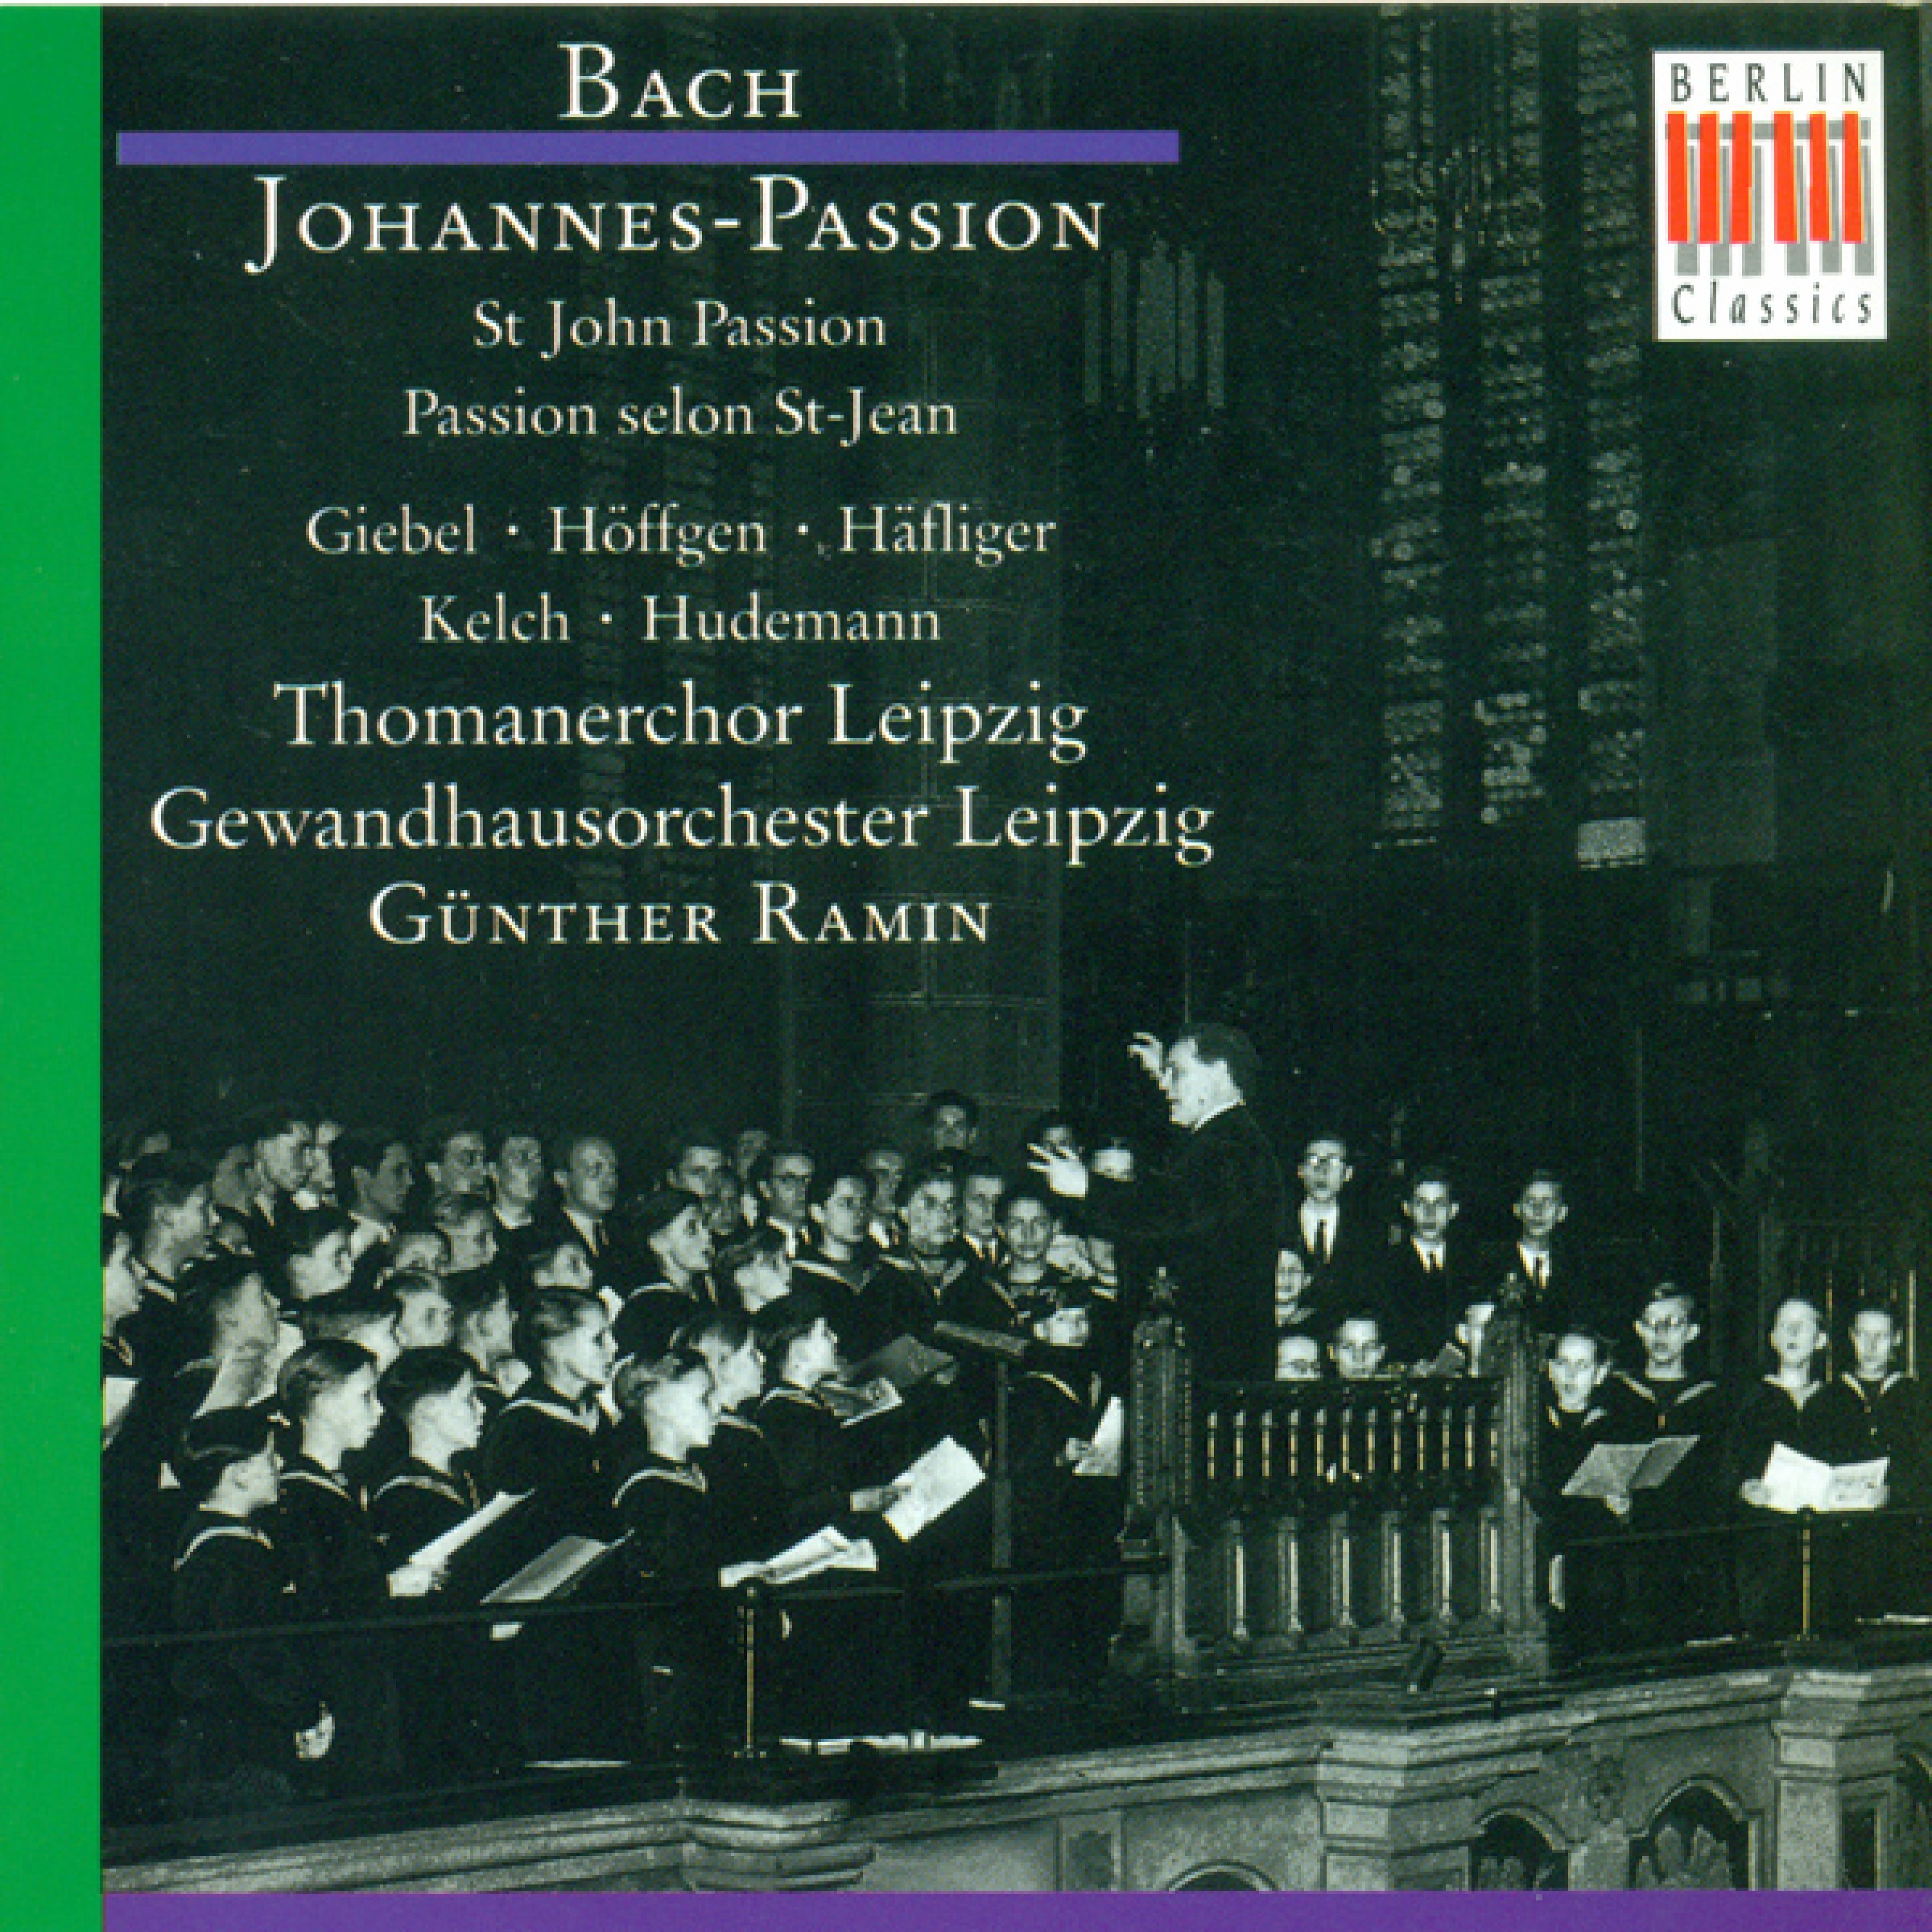 Johannes-Passion, BWV 245: Part II - "Die Juden aber"